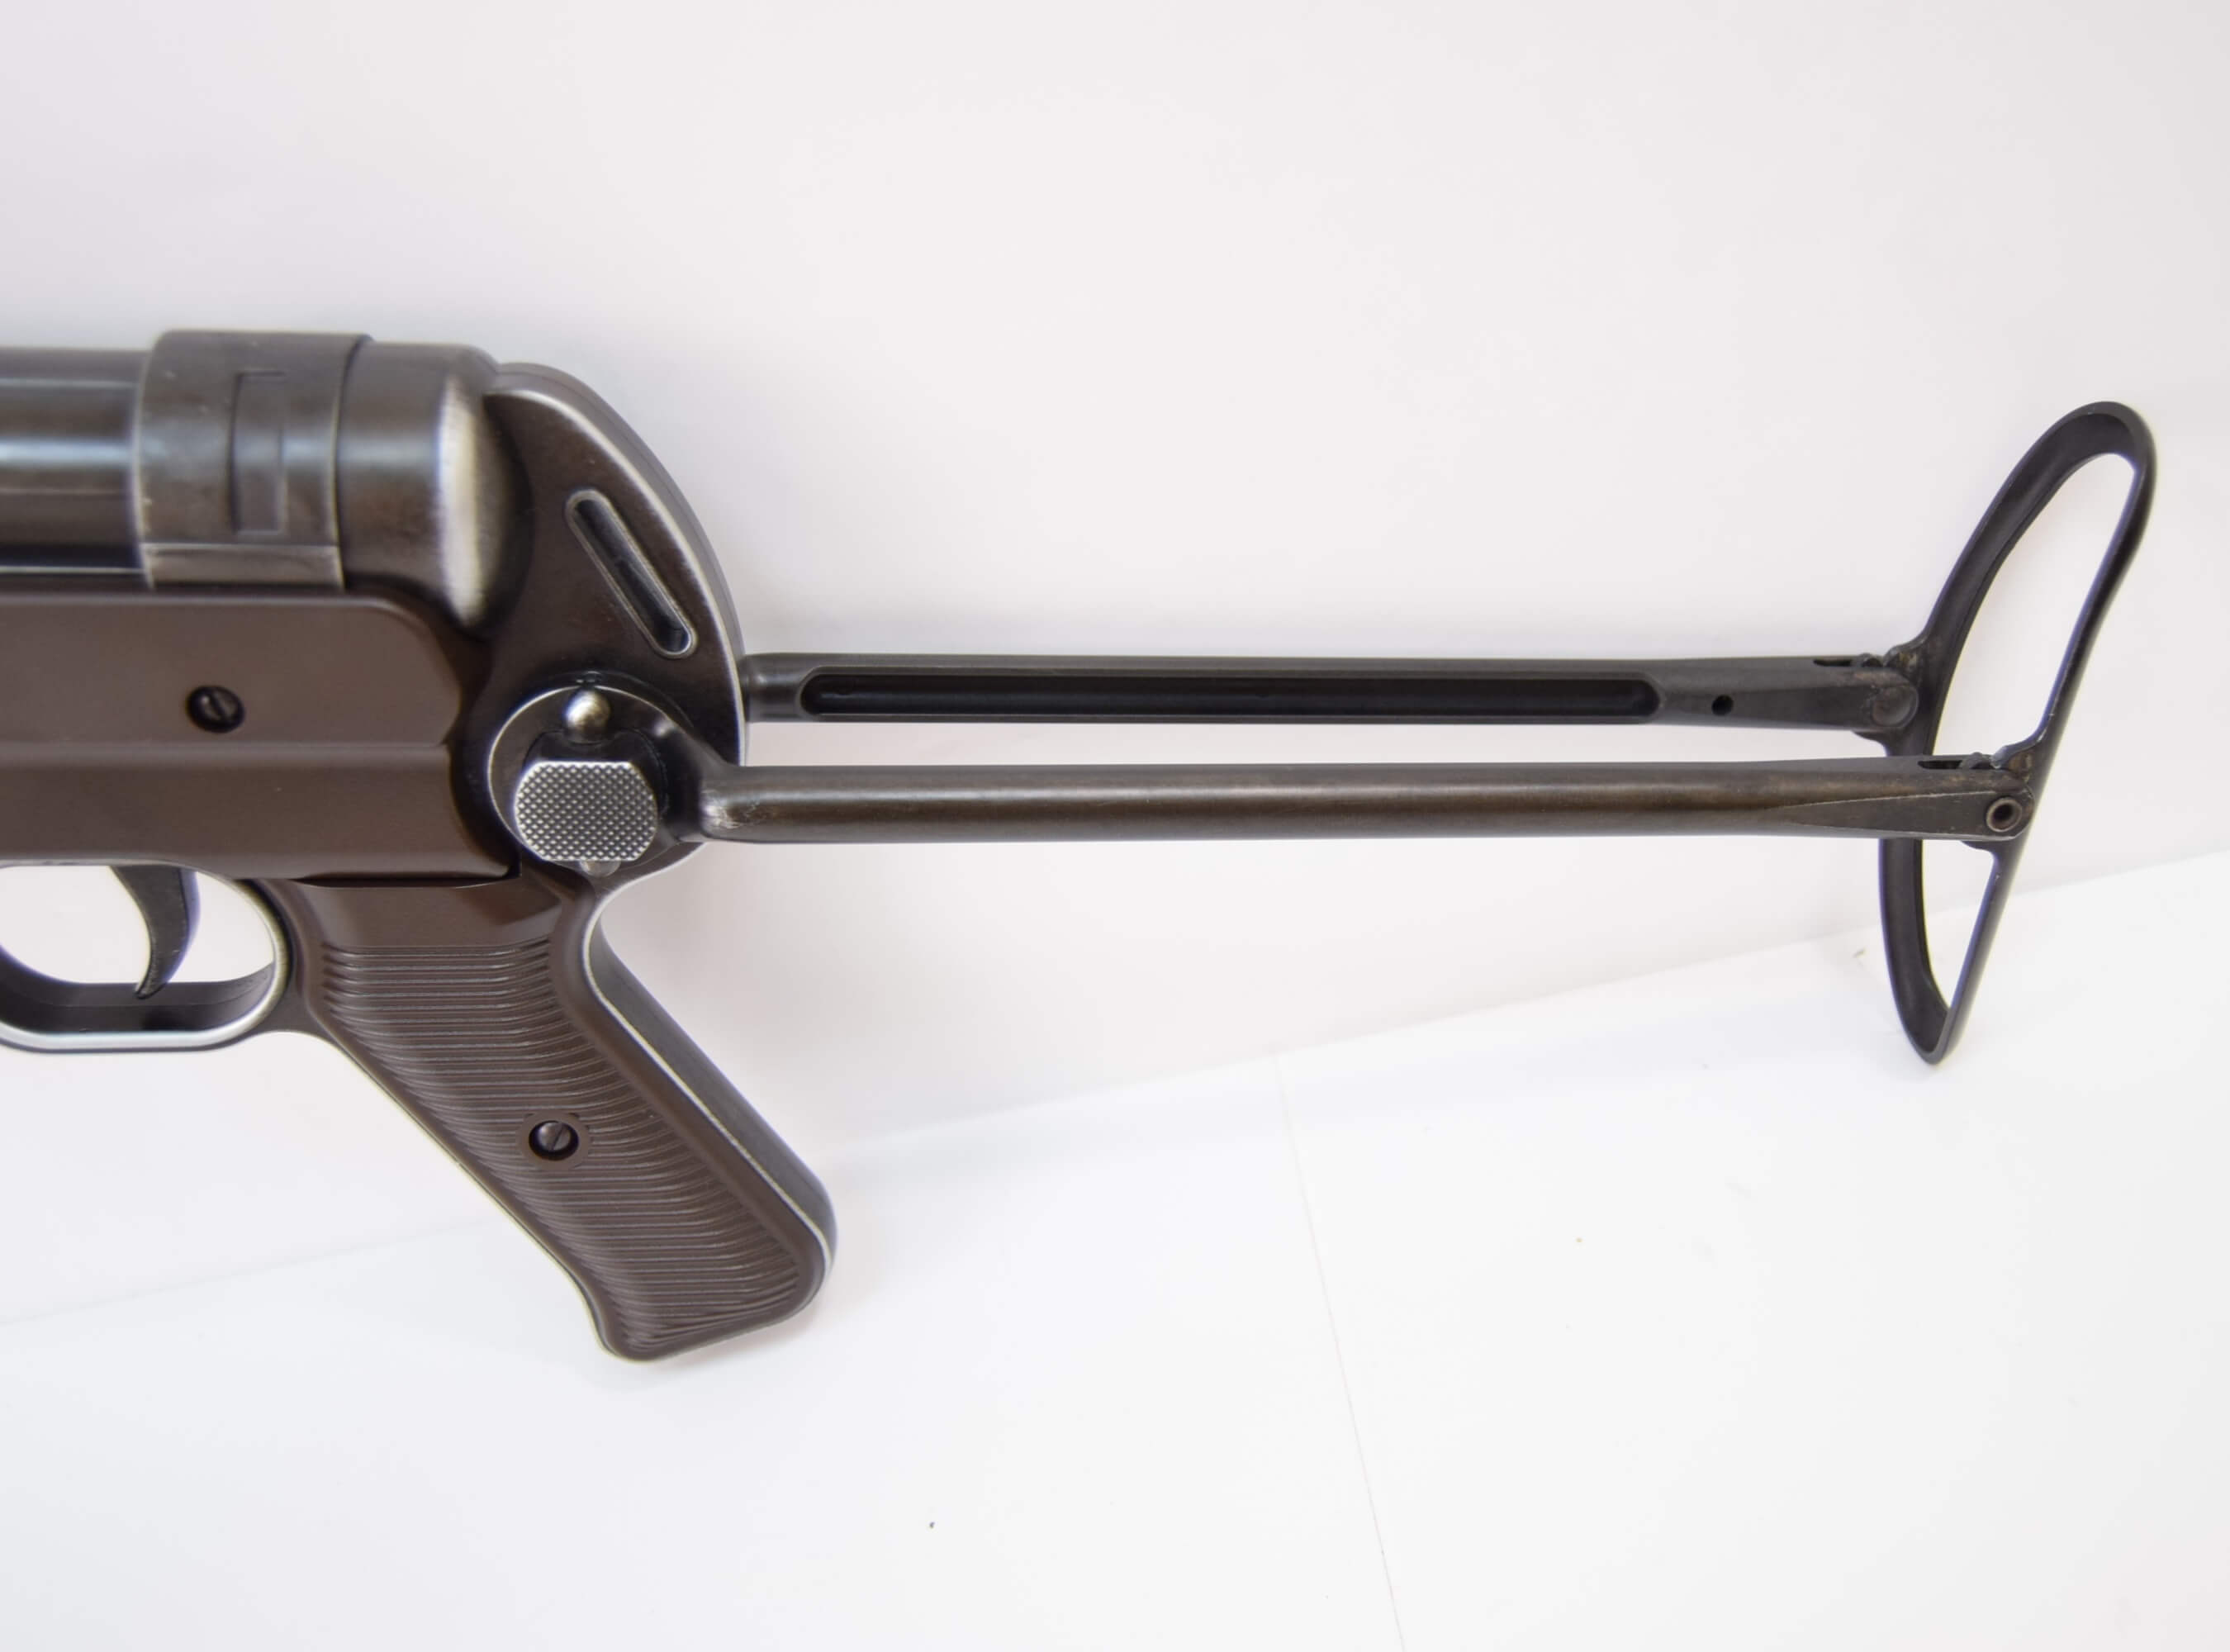 Пневматический пистолет-пулемет Umarex Legends MP-40 German Legacy Edition